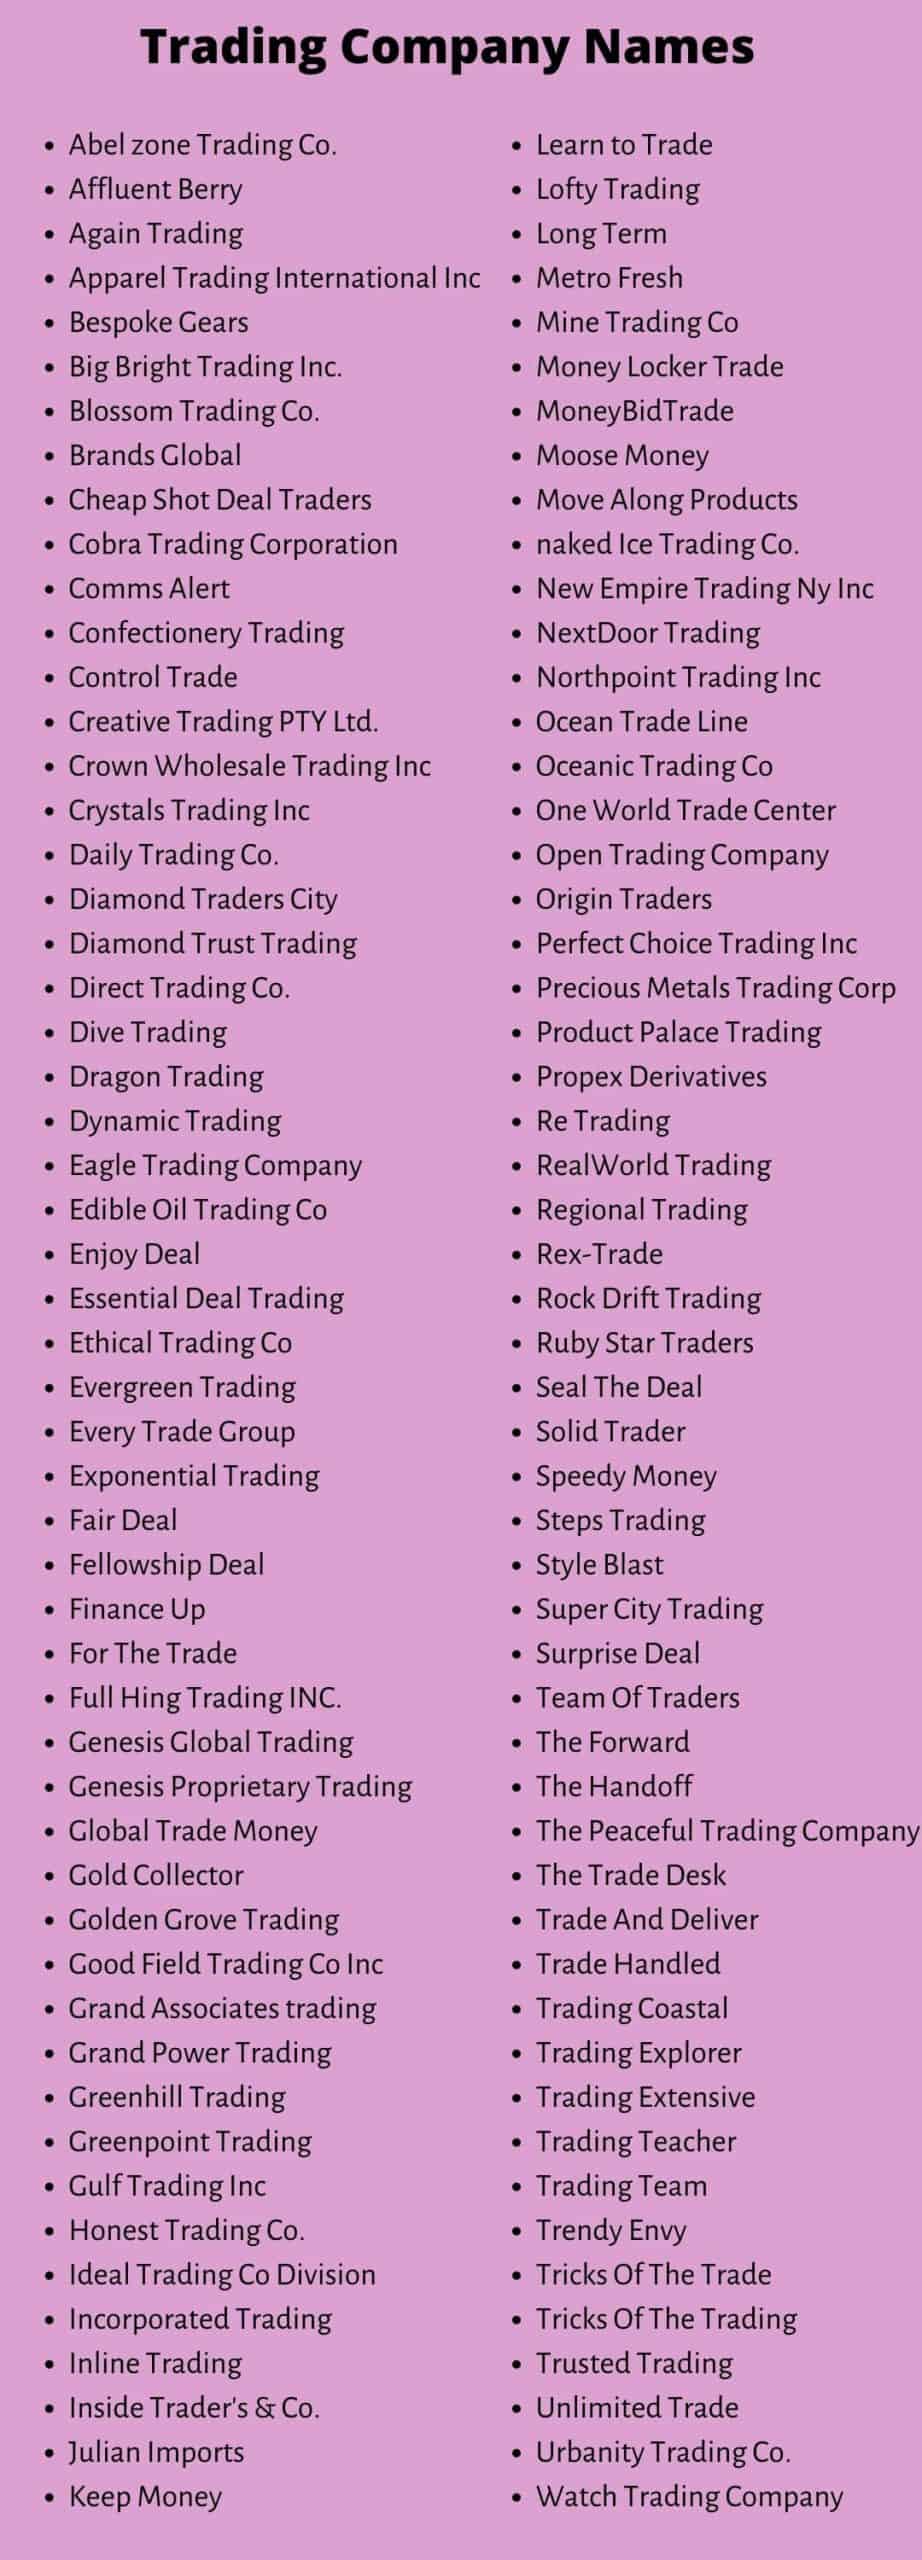 Trading Company Names